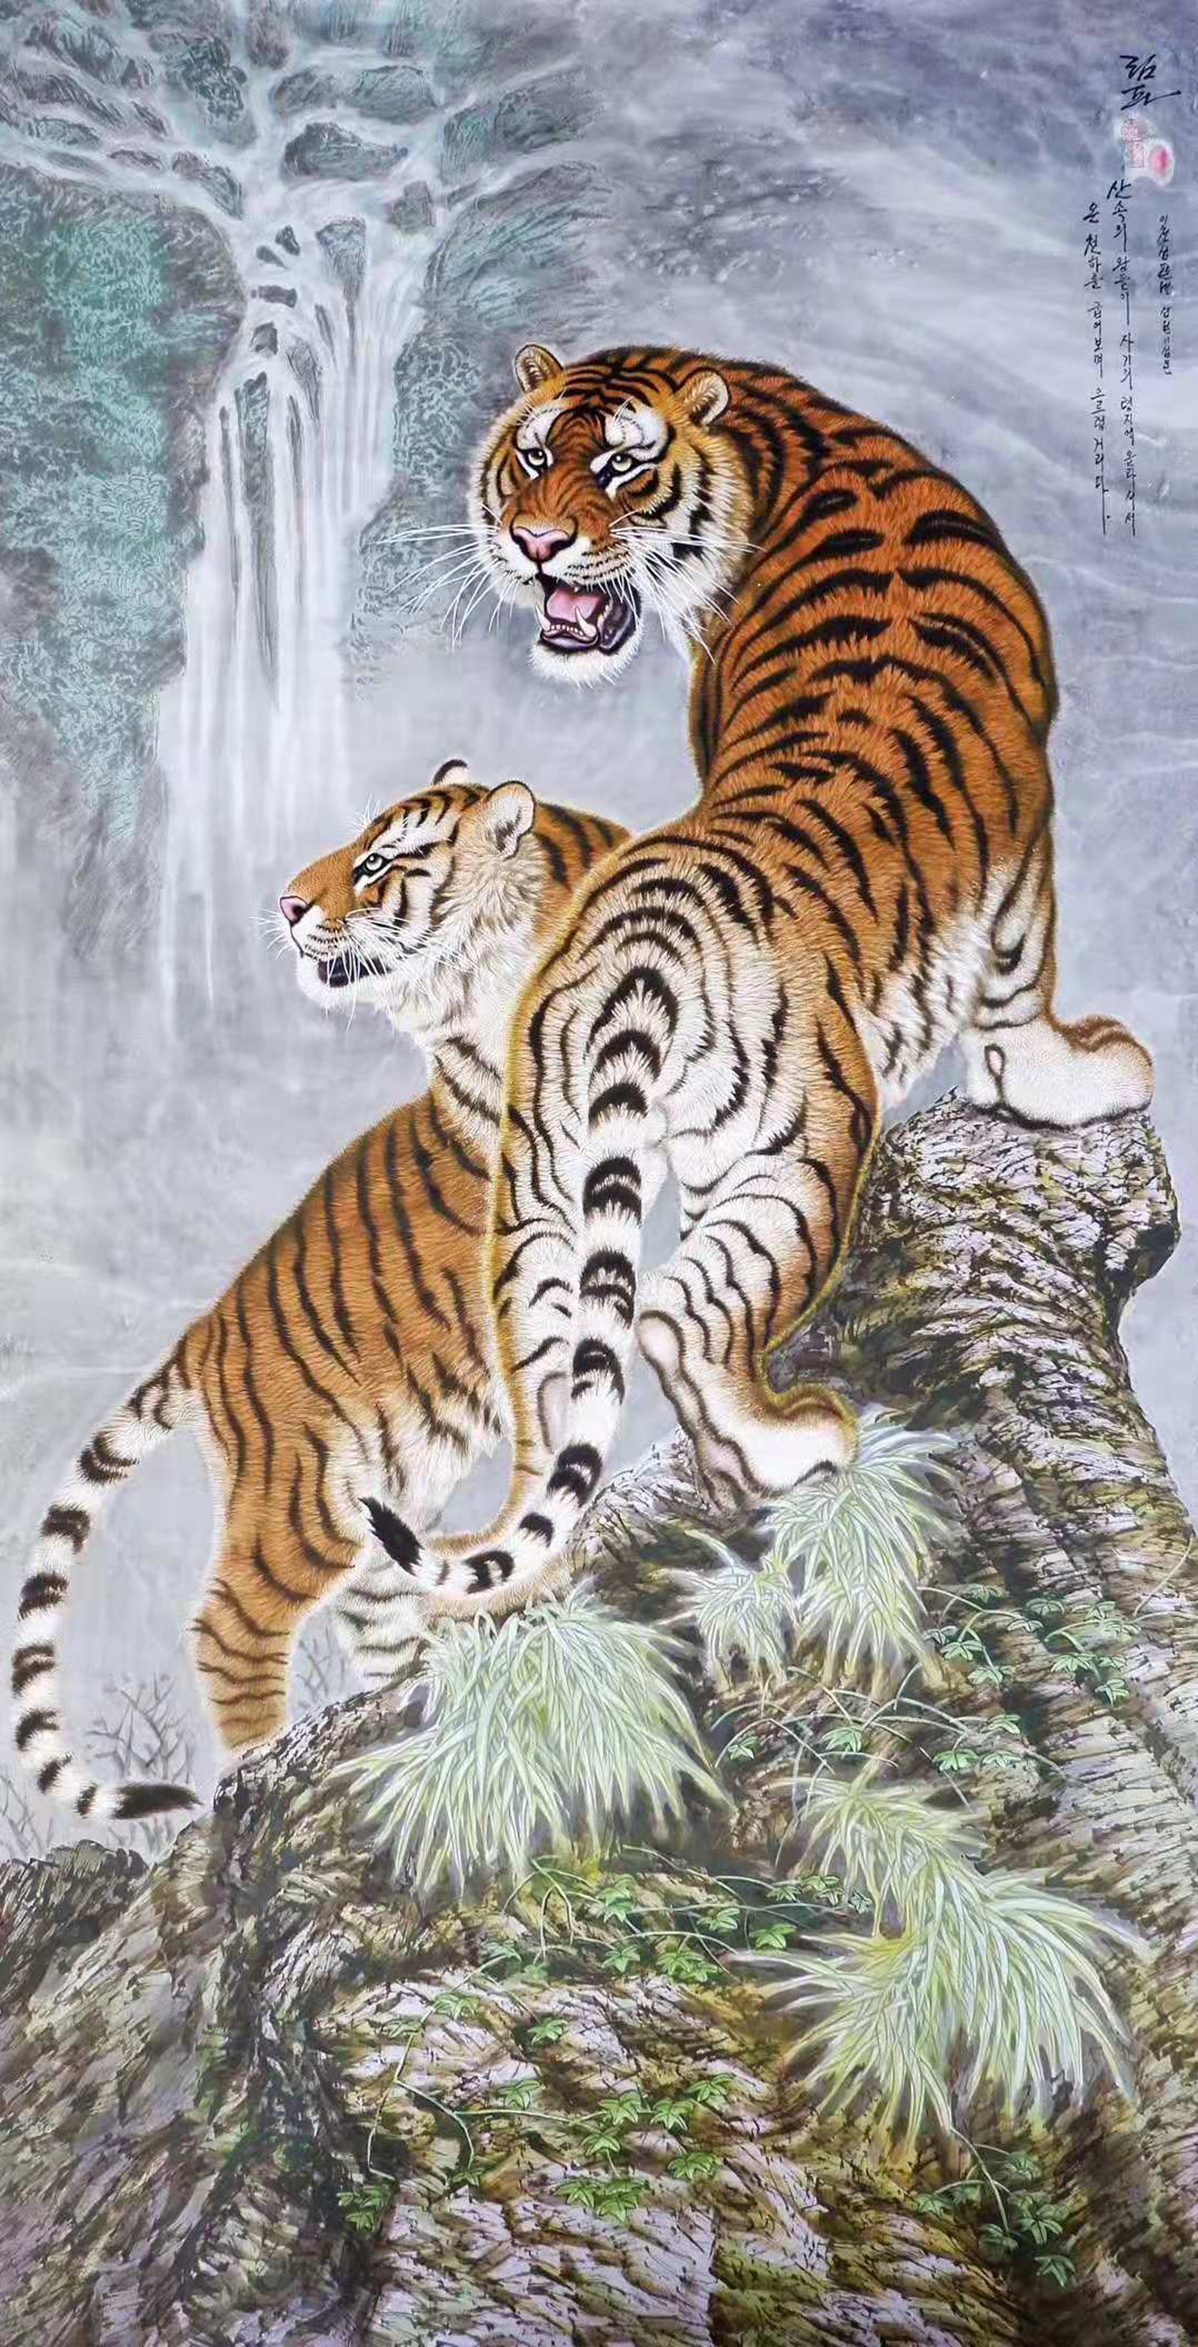 工笔重彩画虎:一组林海雪原中的老虎画,请欣赏